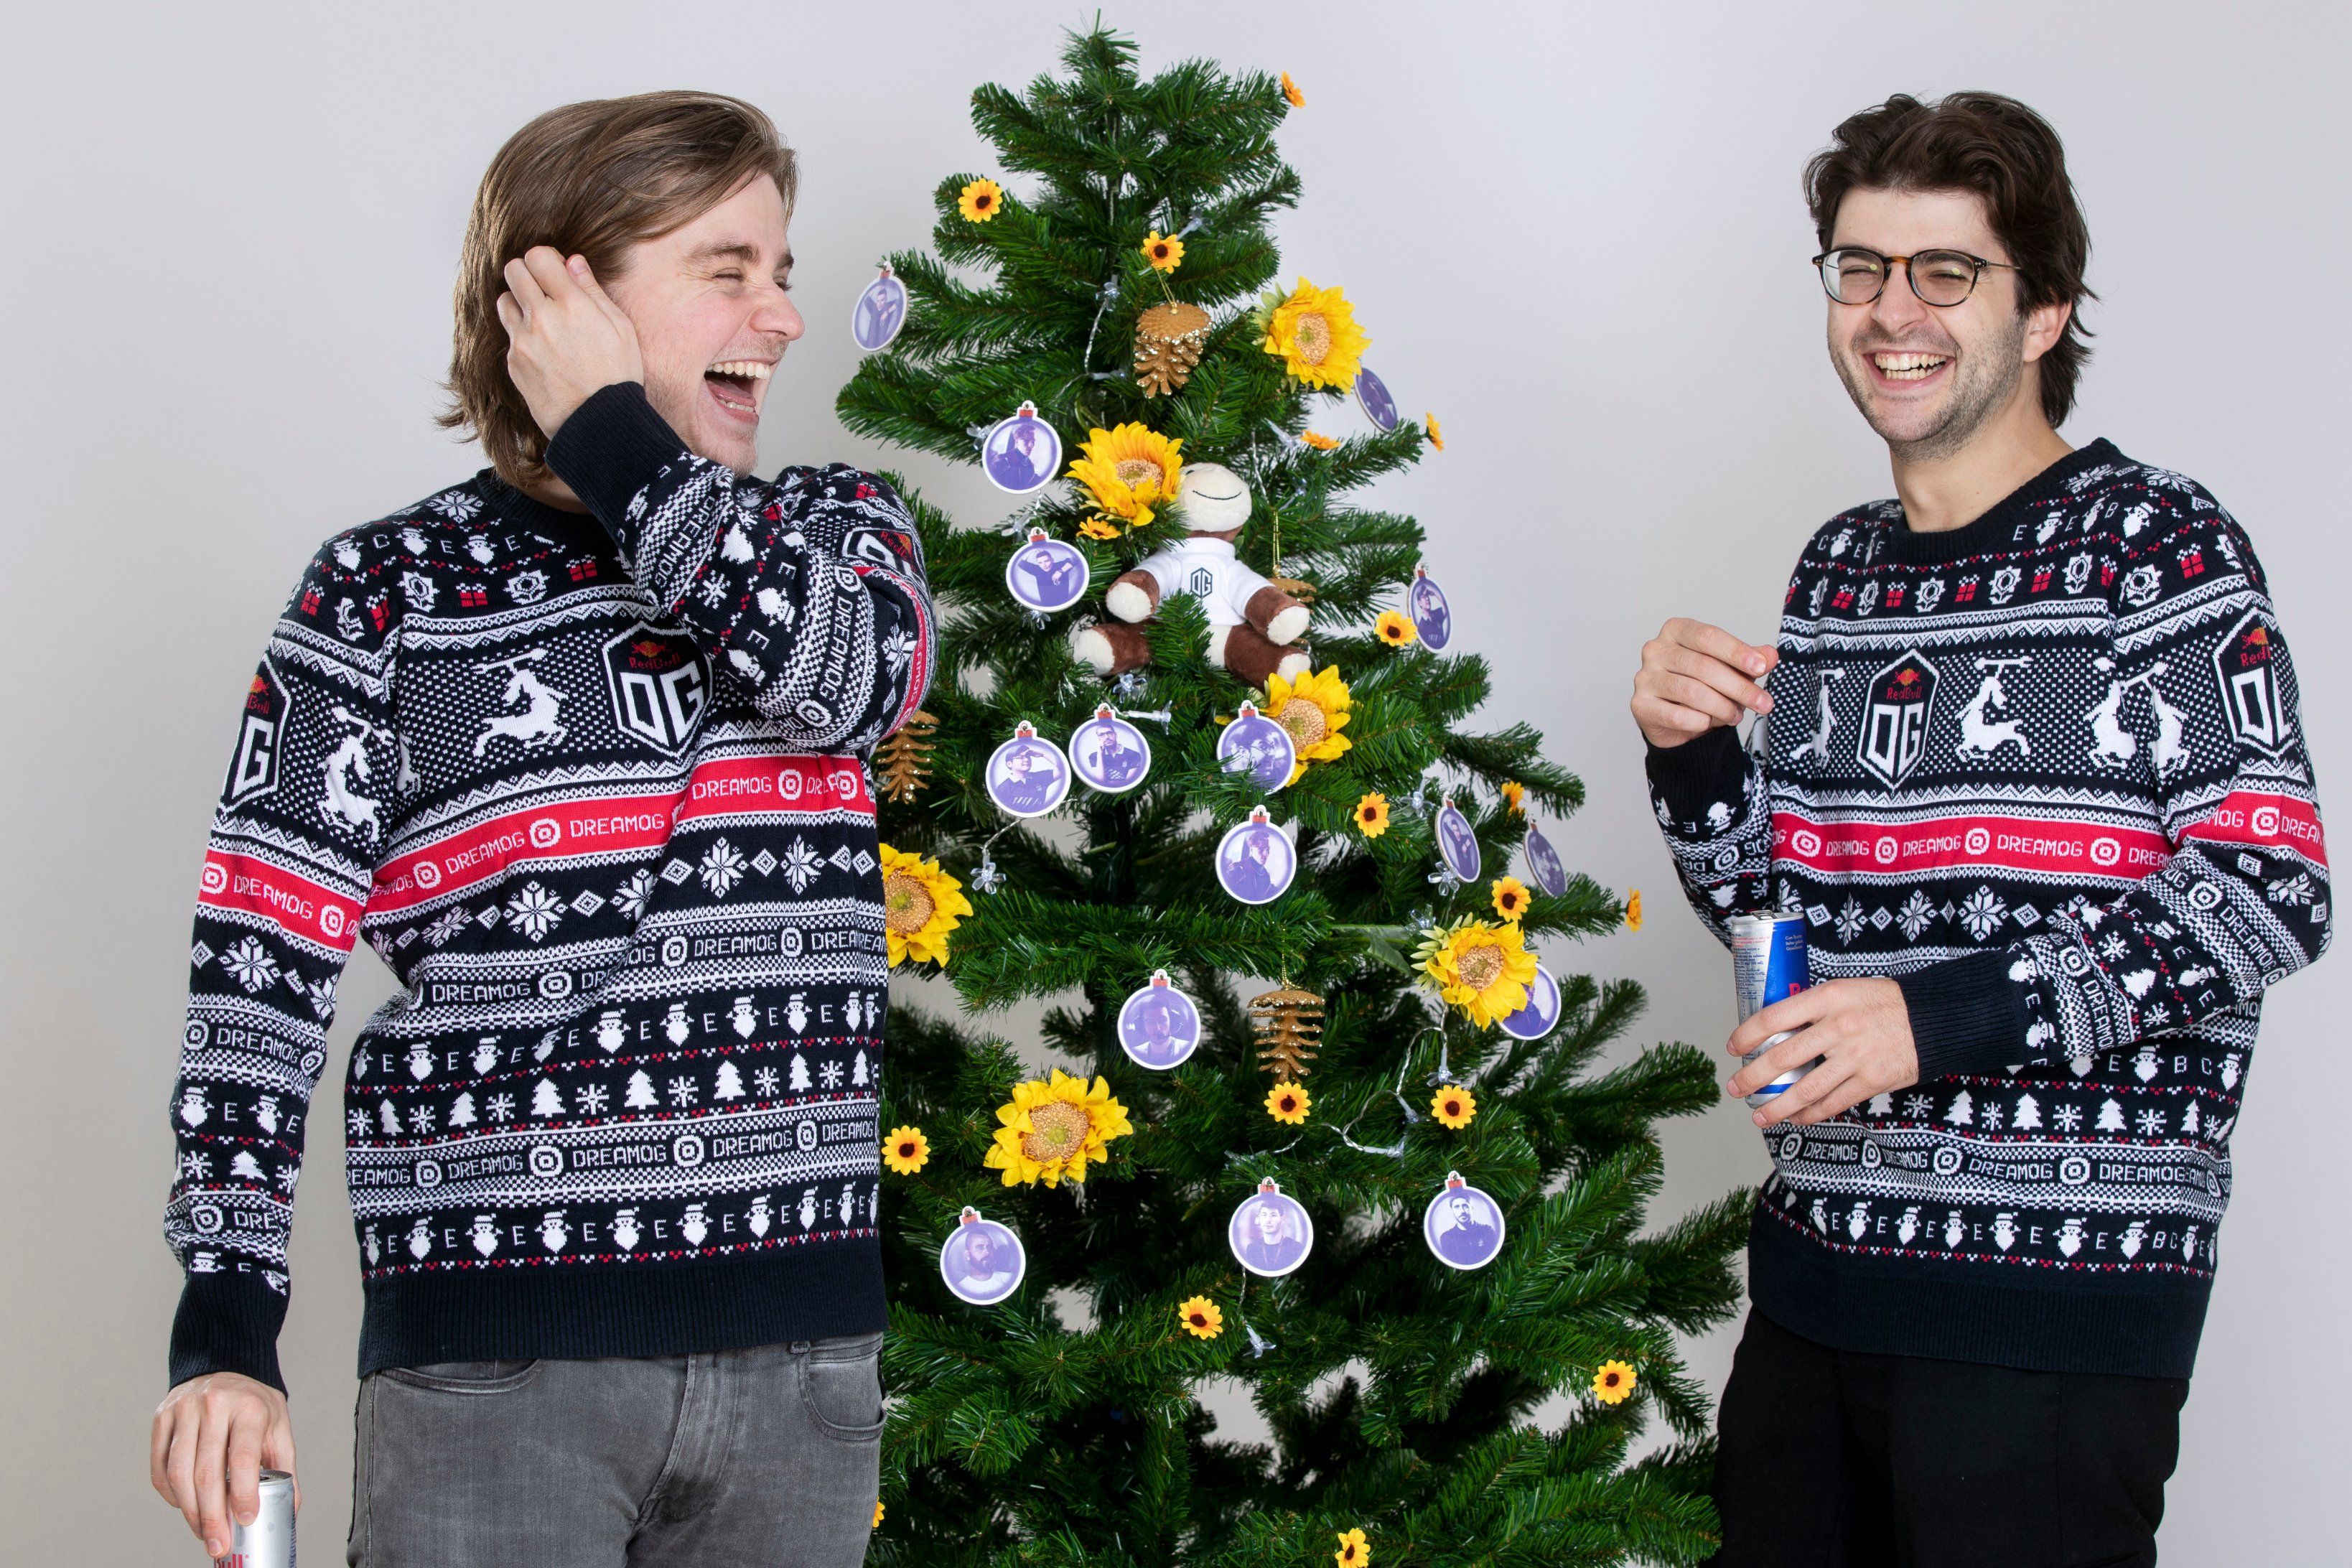 N0tail и Ceb в рождественских свитерах OG.
Источник: OG